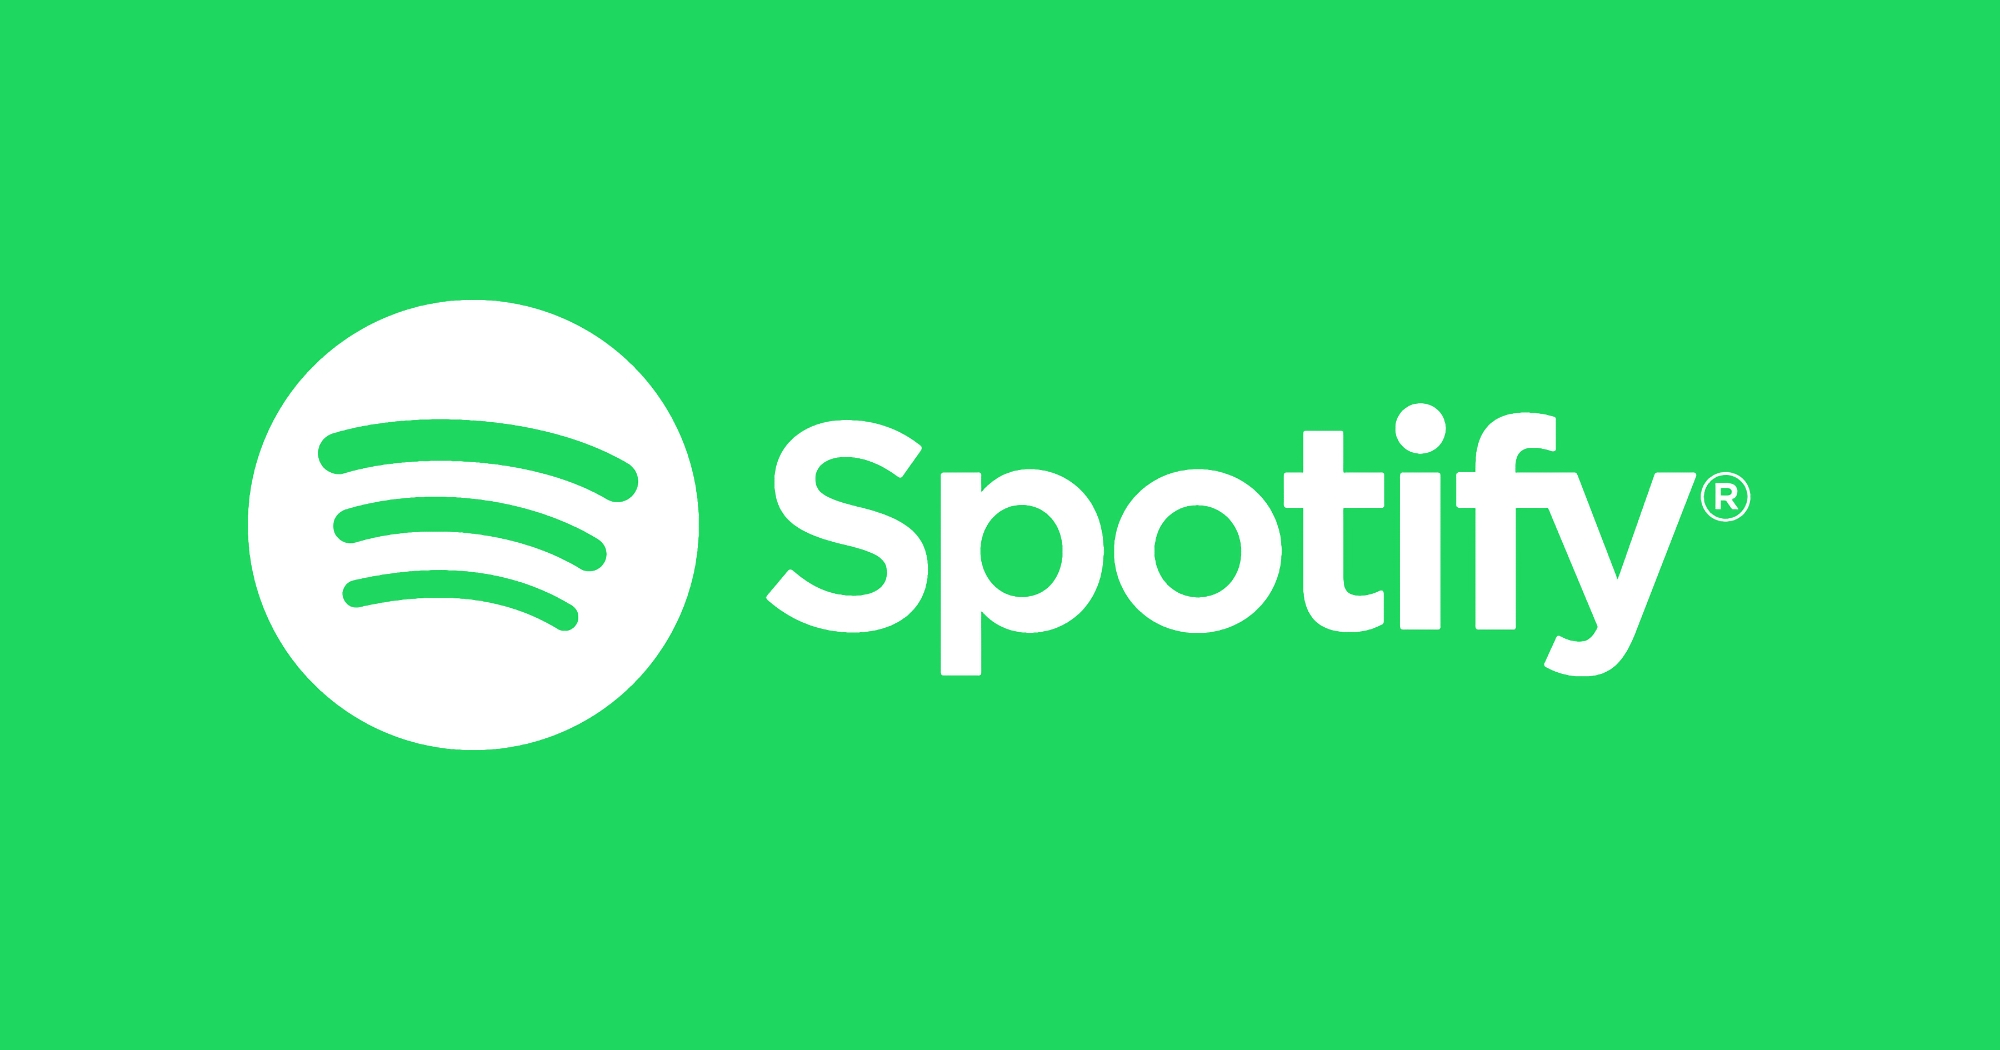 0 USD za trzy miesiące subskrypcji Premium: Spotify uruchomił promocję, aby przyciągnąć nowych użytkowników